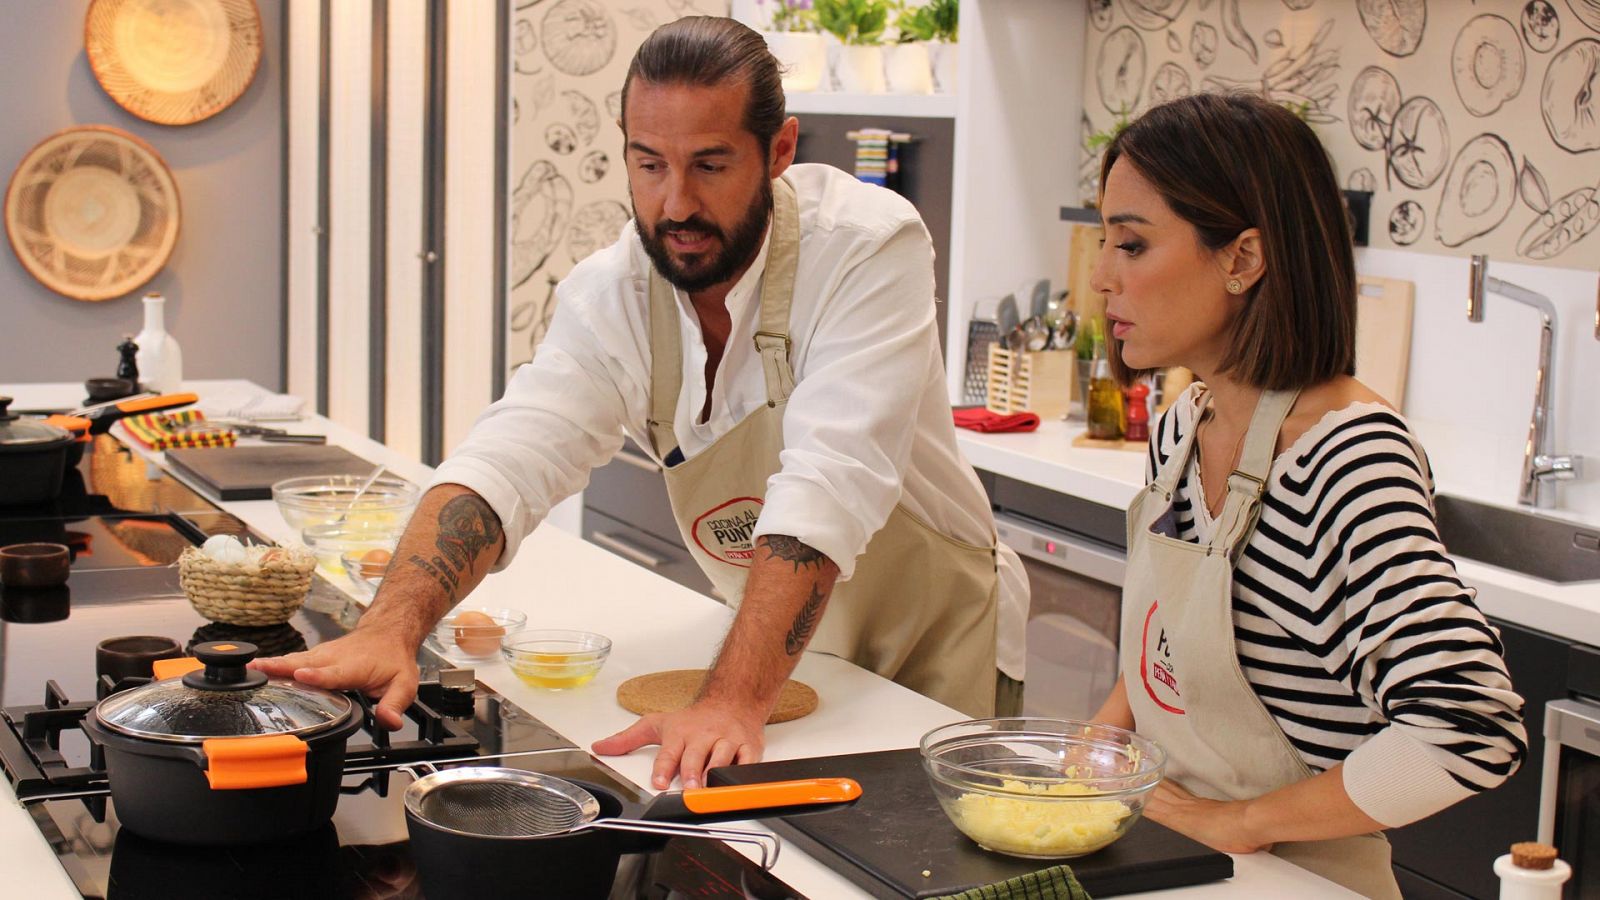 Cocina al punto con Peña y Tamara - Huevo - RTVE.es